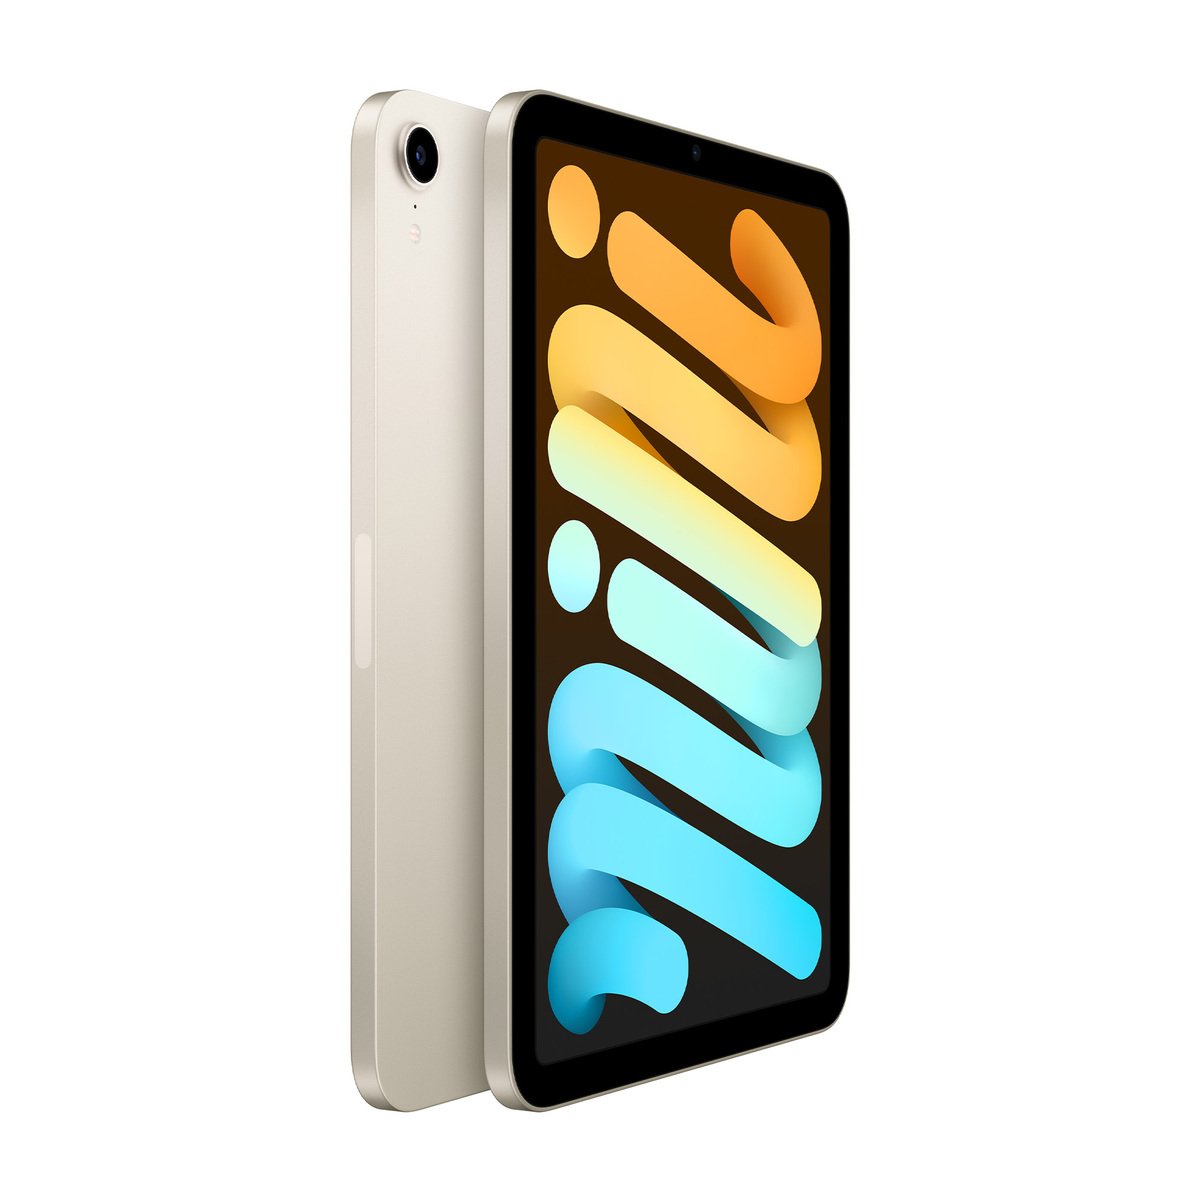 Apple iPad mini 2021 (6th Generation) 8.3-inch, Wi-Fi, 64GB - Starlight